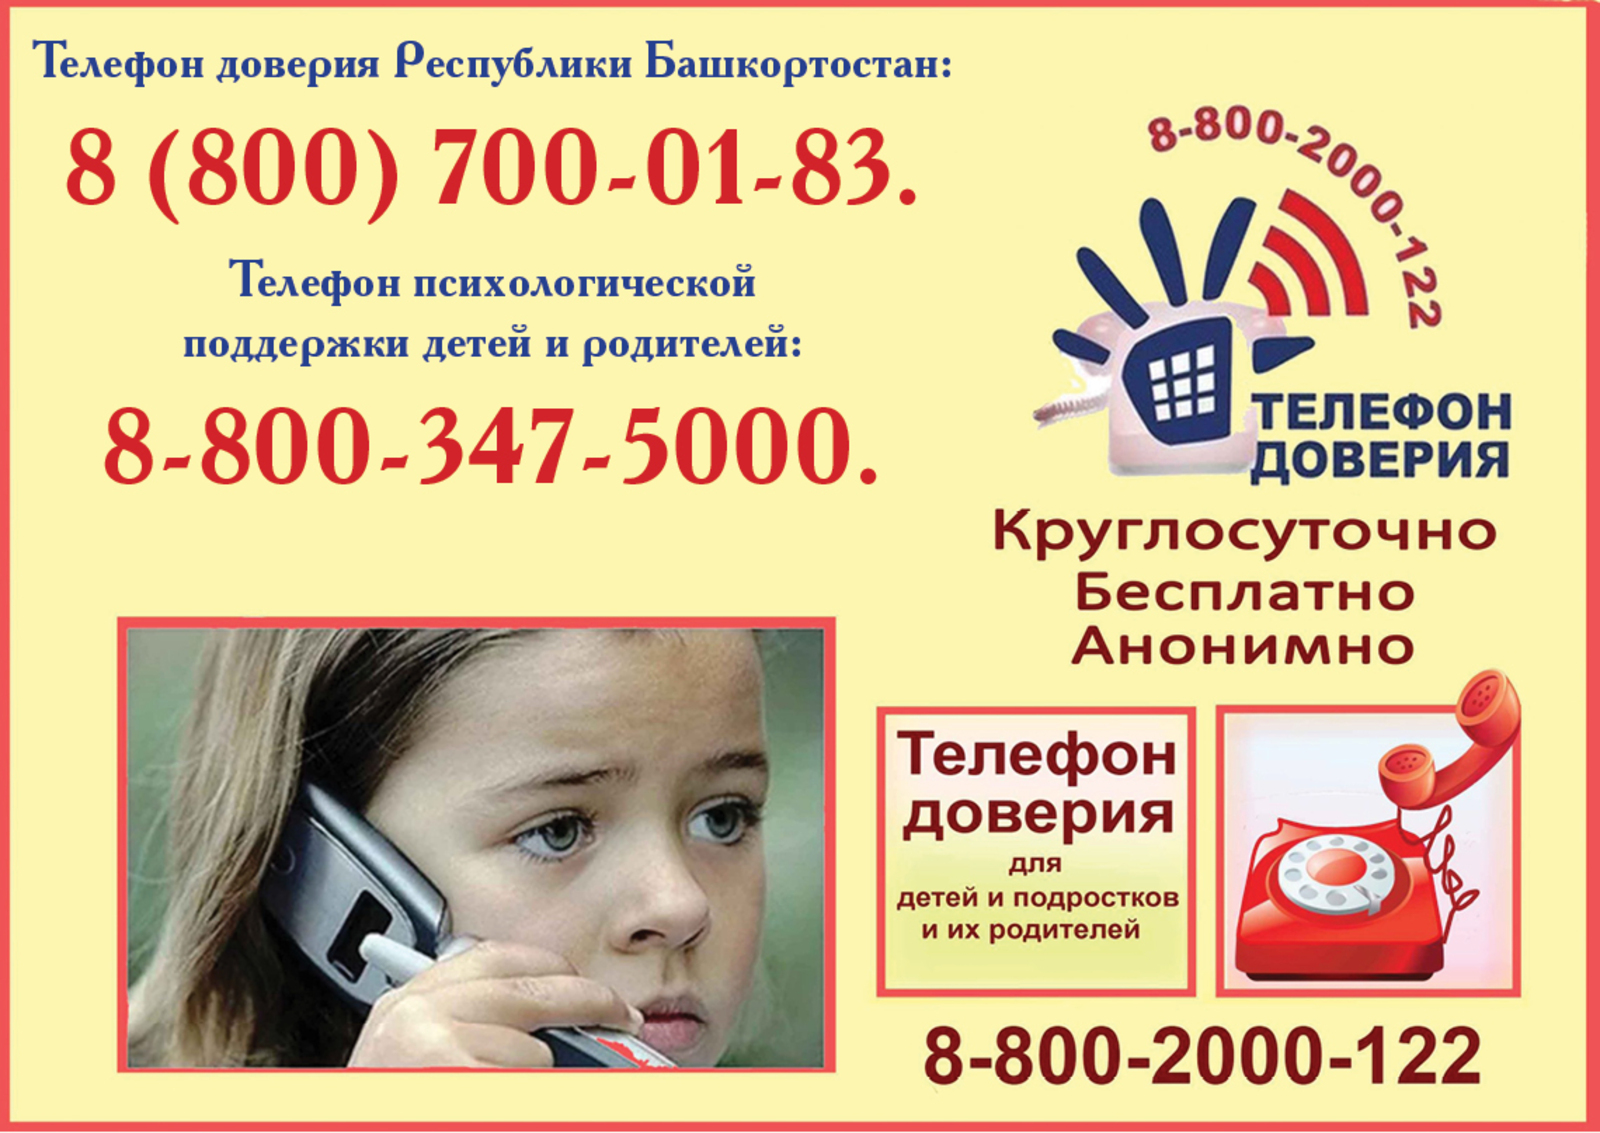 Телефон доверия по Республике Башкортостан